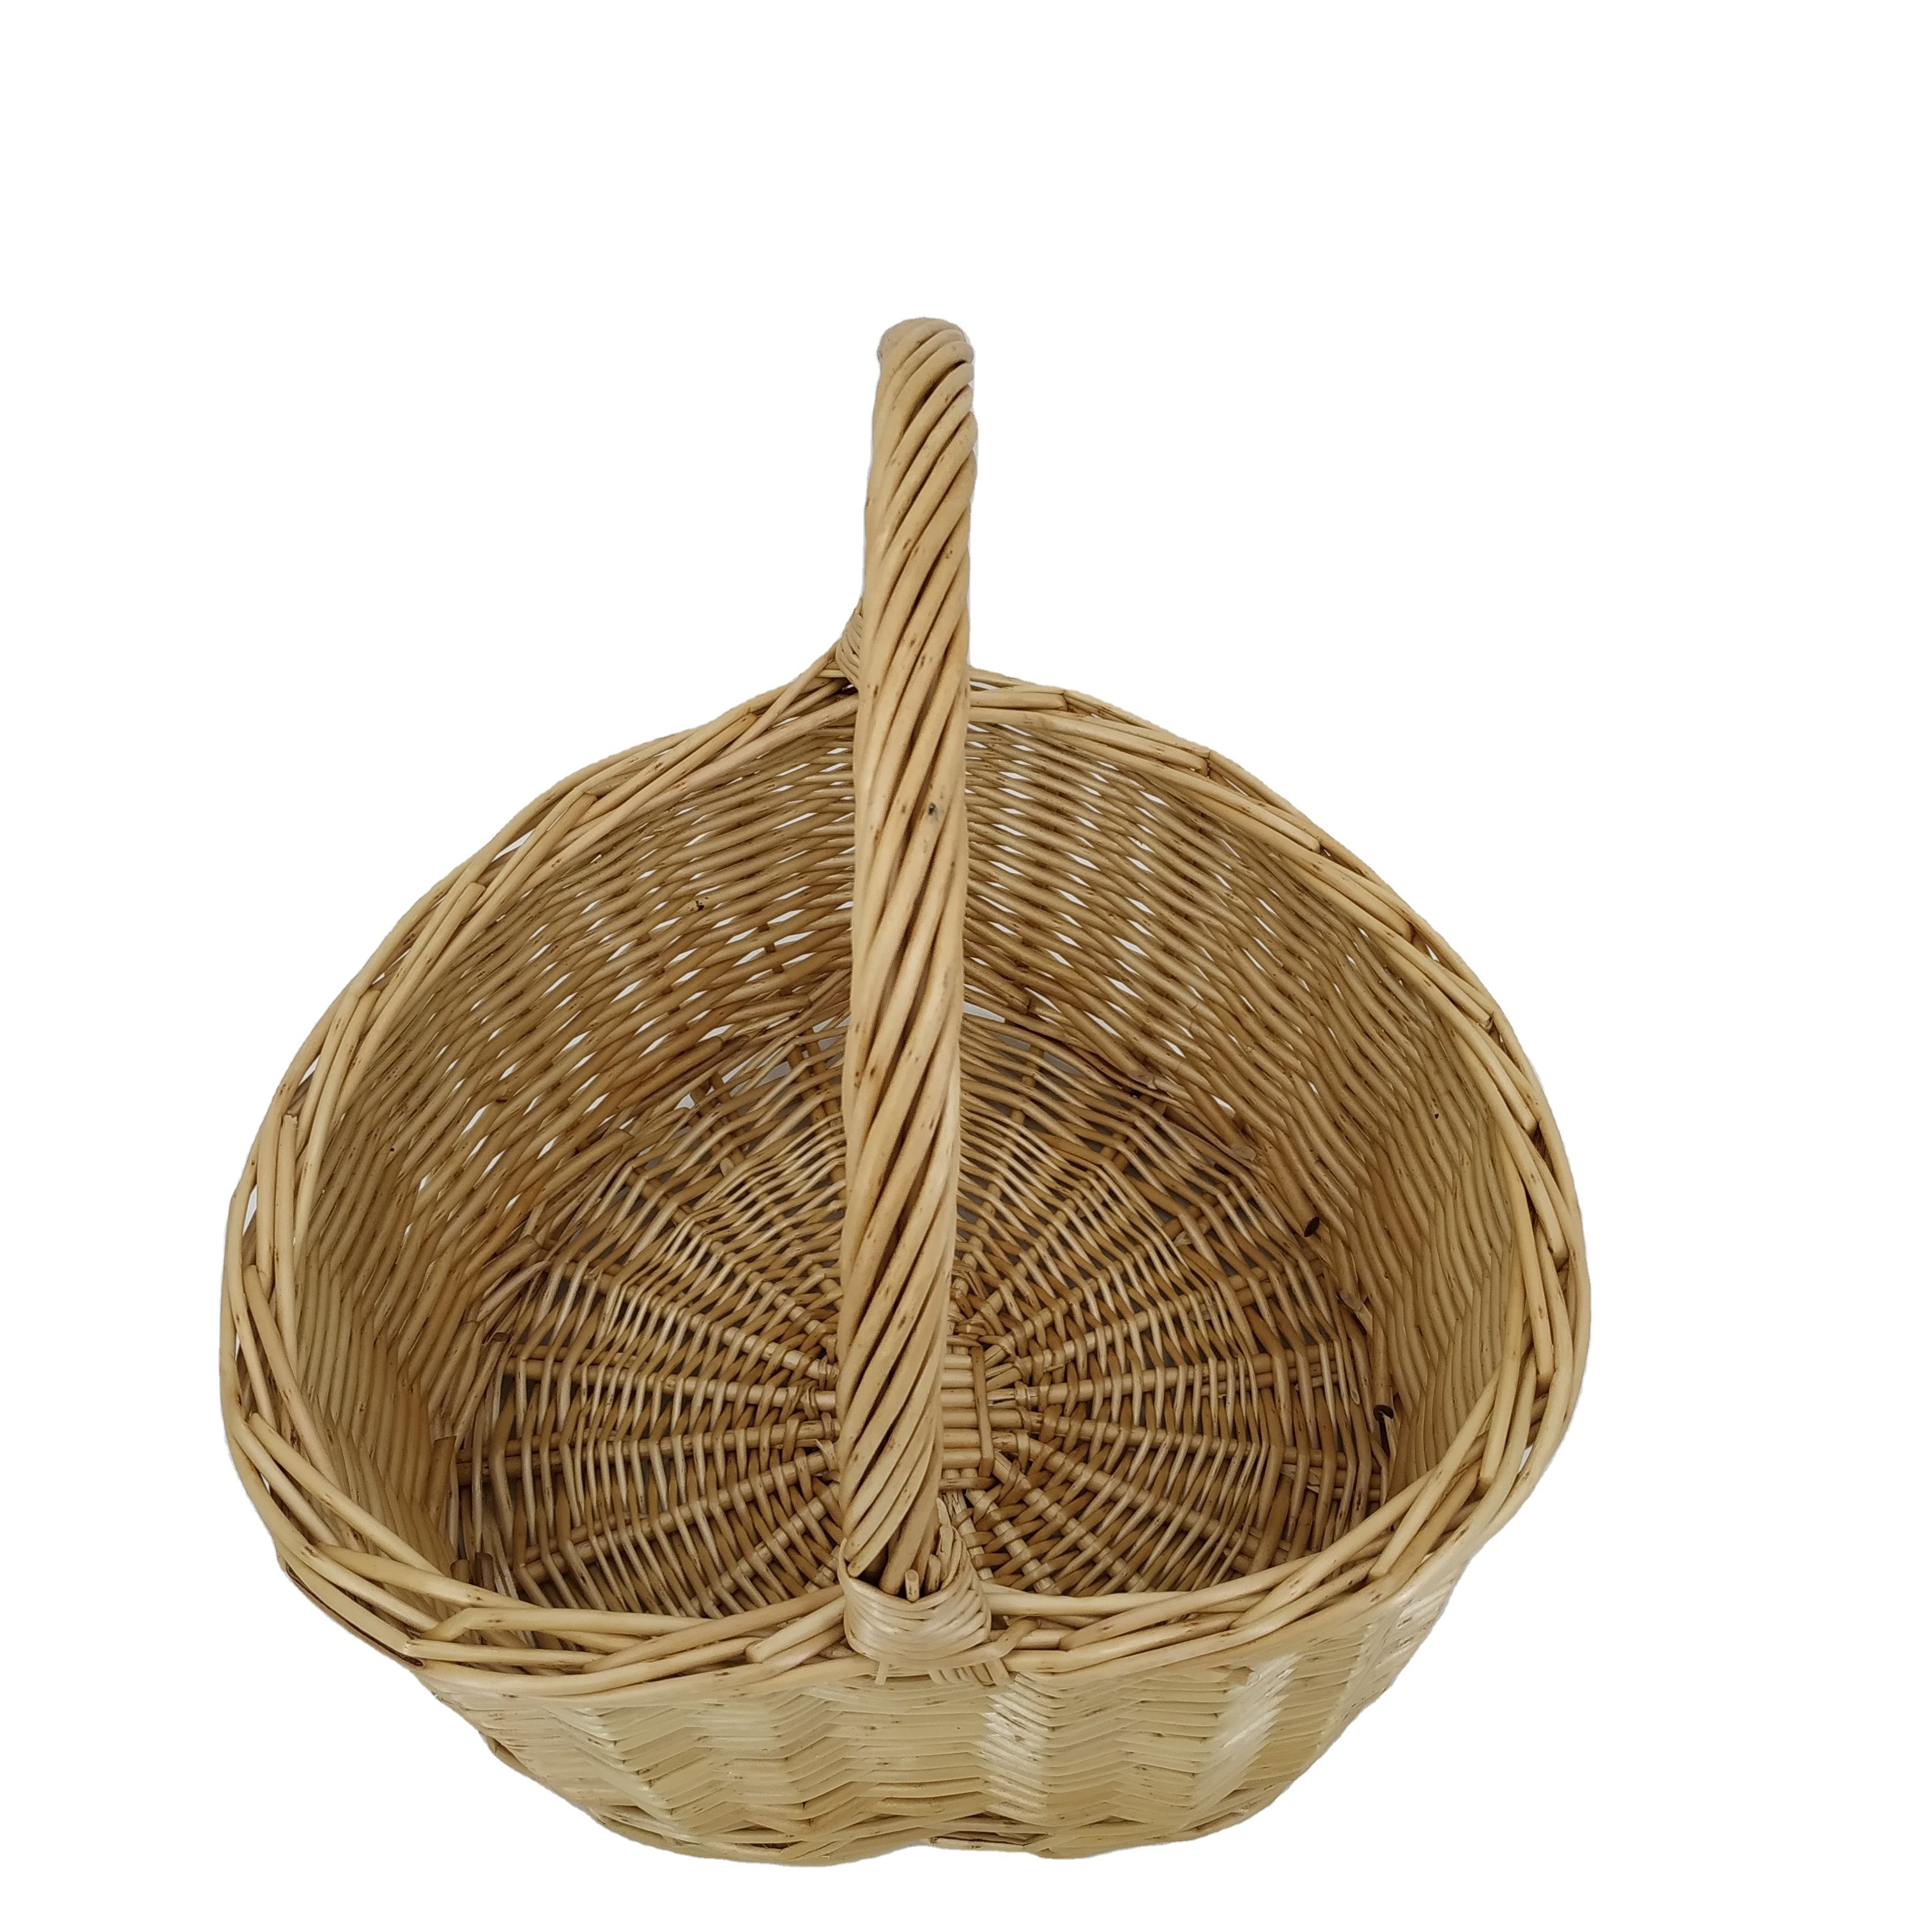 10% OFF willow Wicker heart shape storage gift baskets